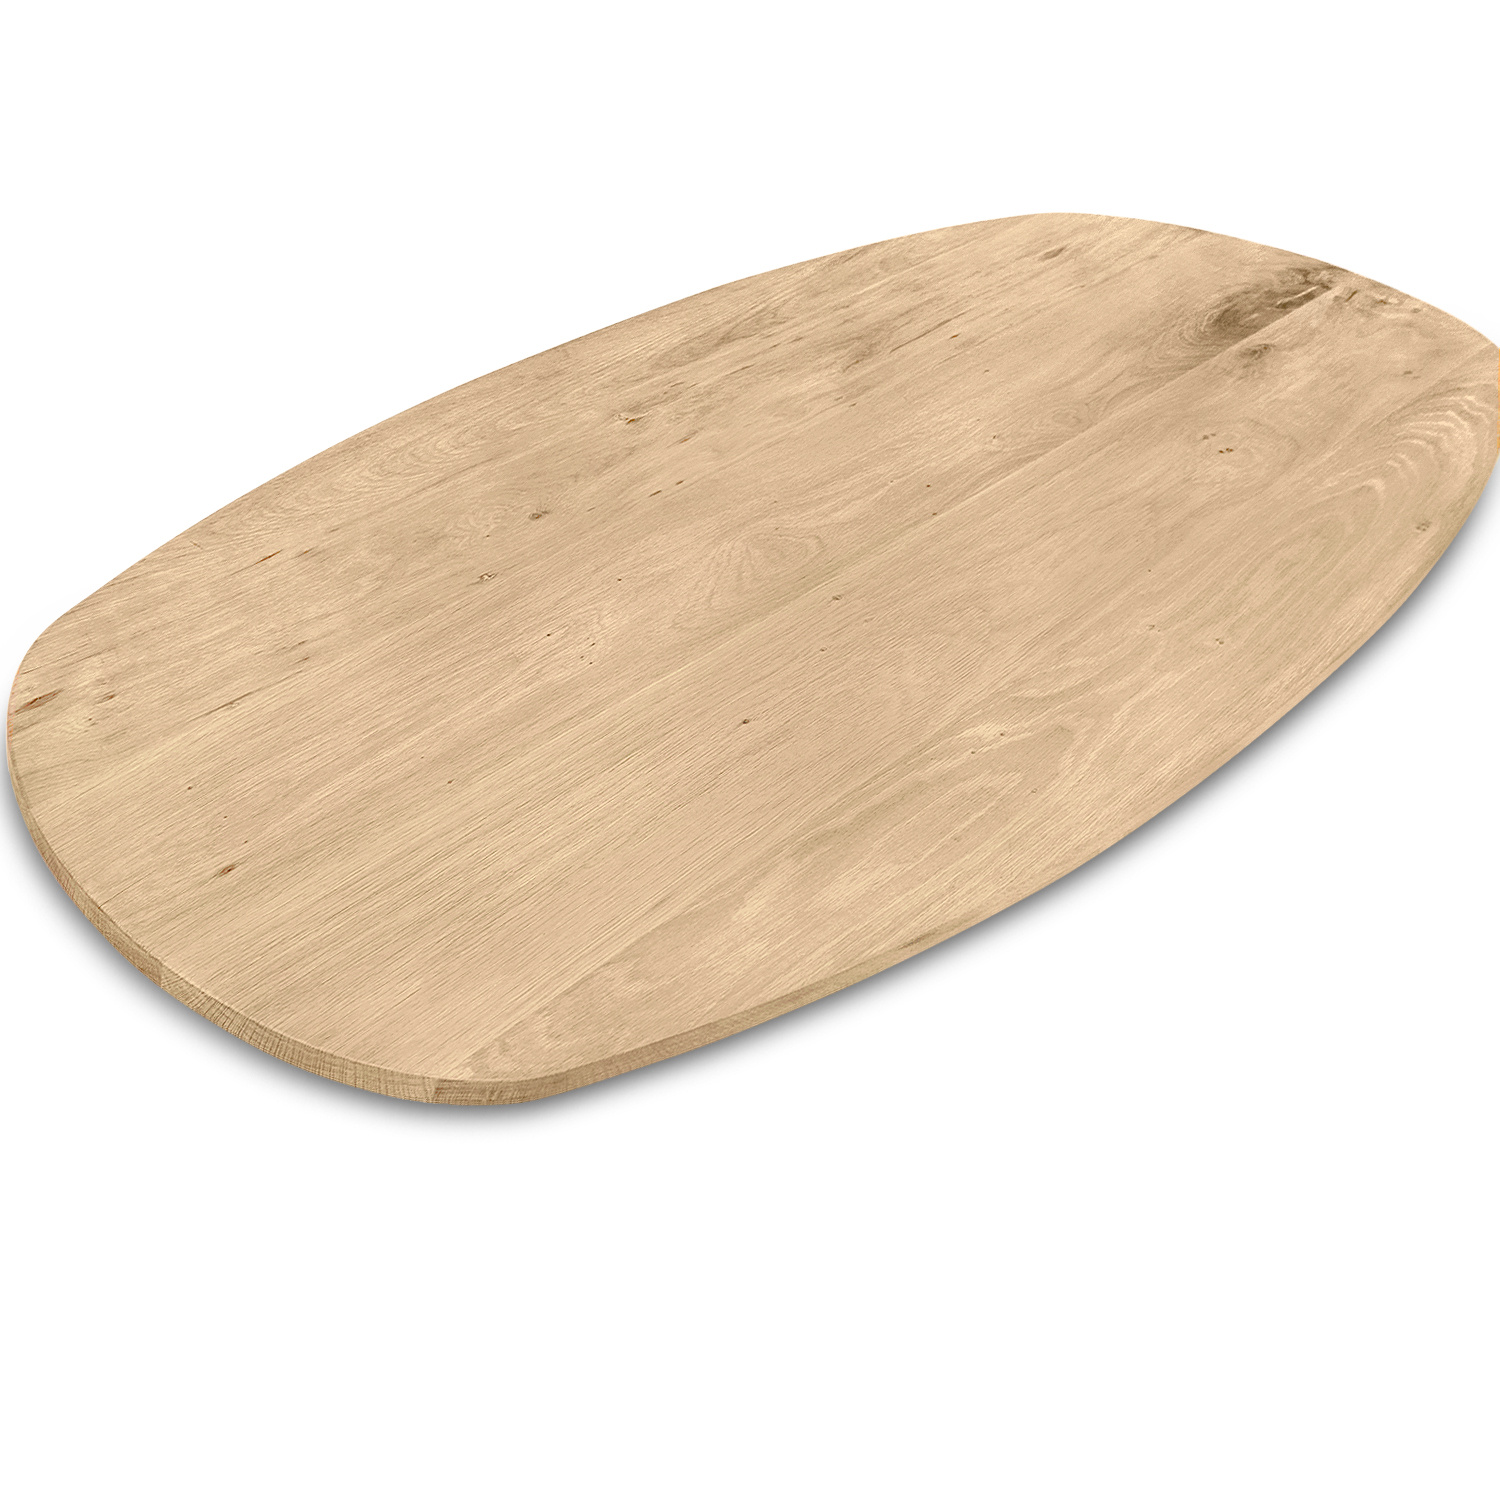  Tischplatte Wildeiche dänisch-oval - 2,5 cm dick (1-Schicht) - XXL Lamellen (14-20 cm breit) - Asteiche (rustikal) - Bootsform - verleimt & künstlich getrocknet (HF 8-12%) - verschiedene Größen